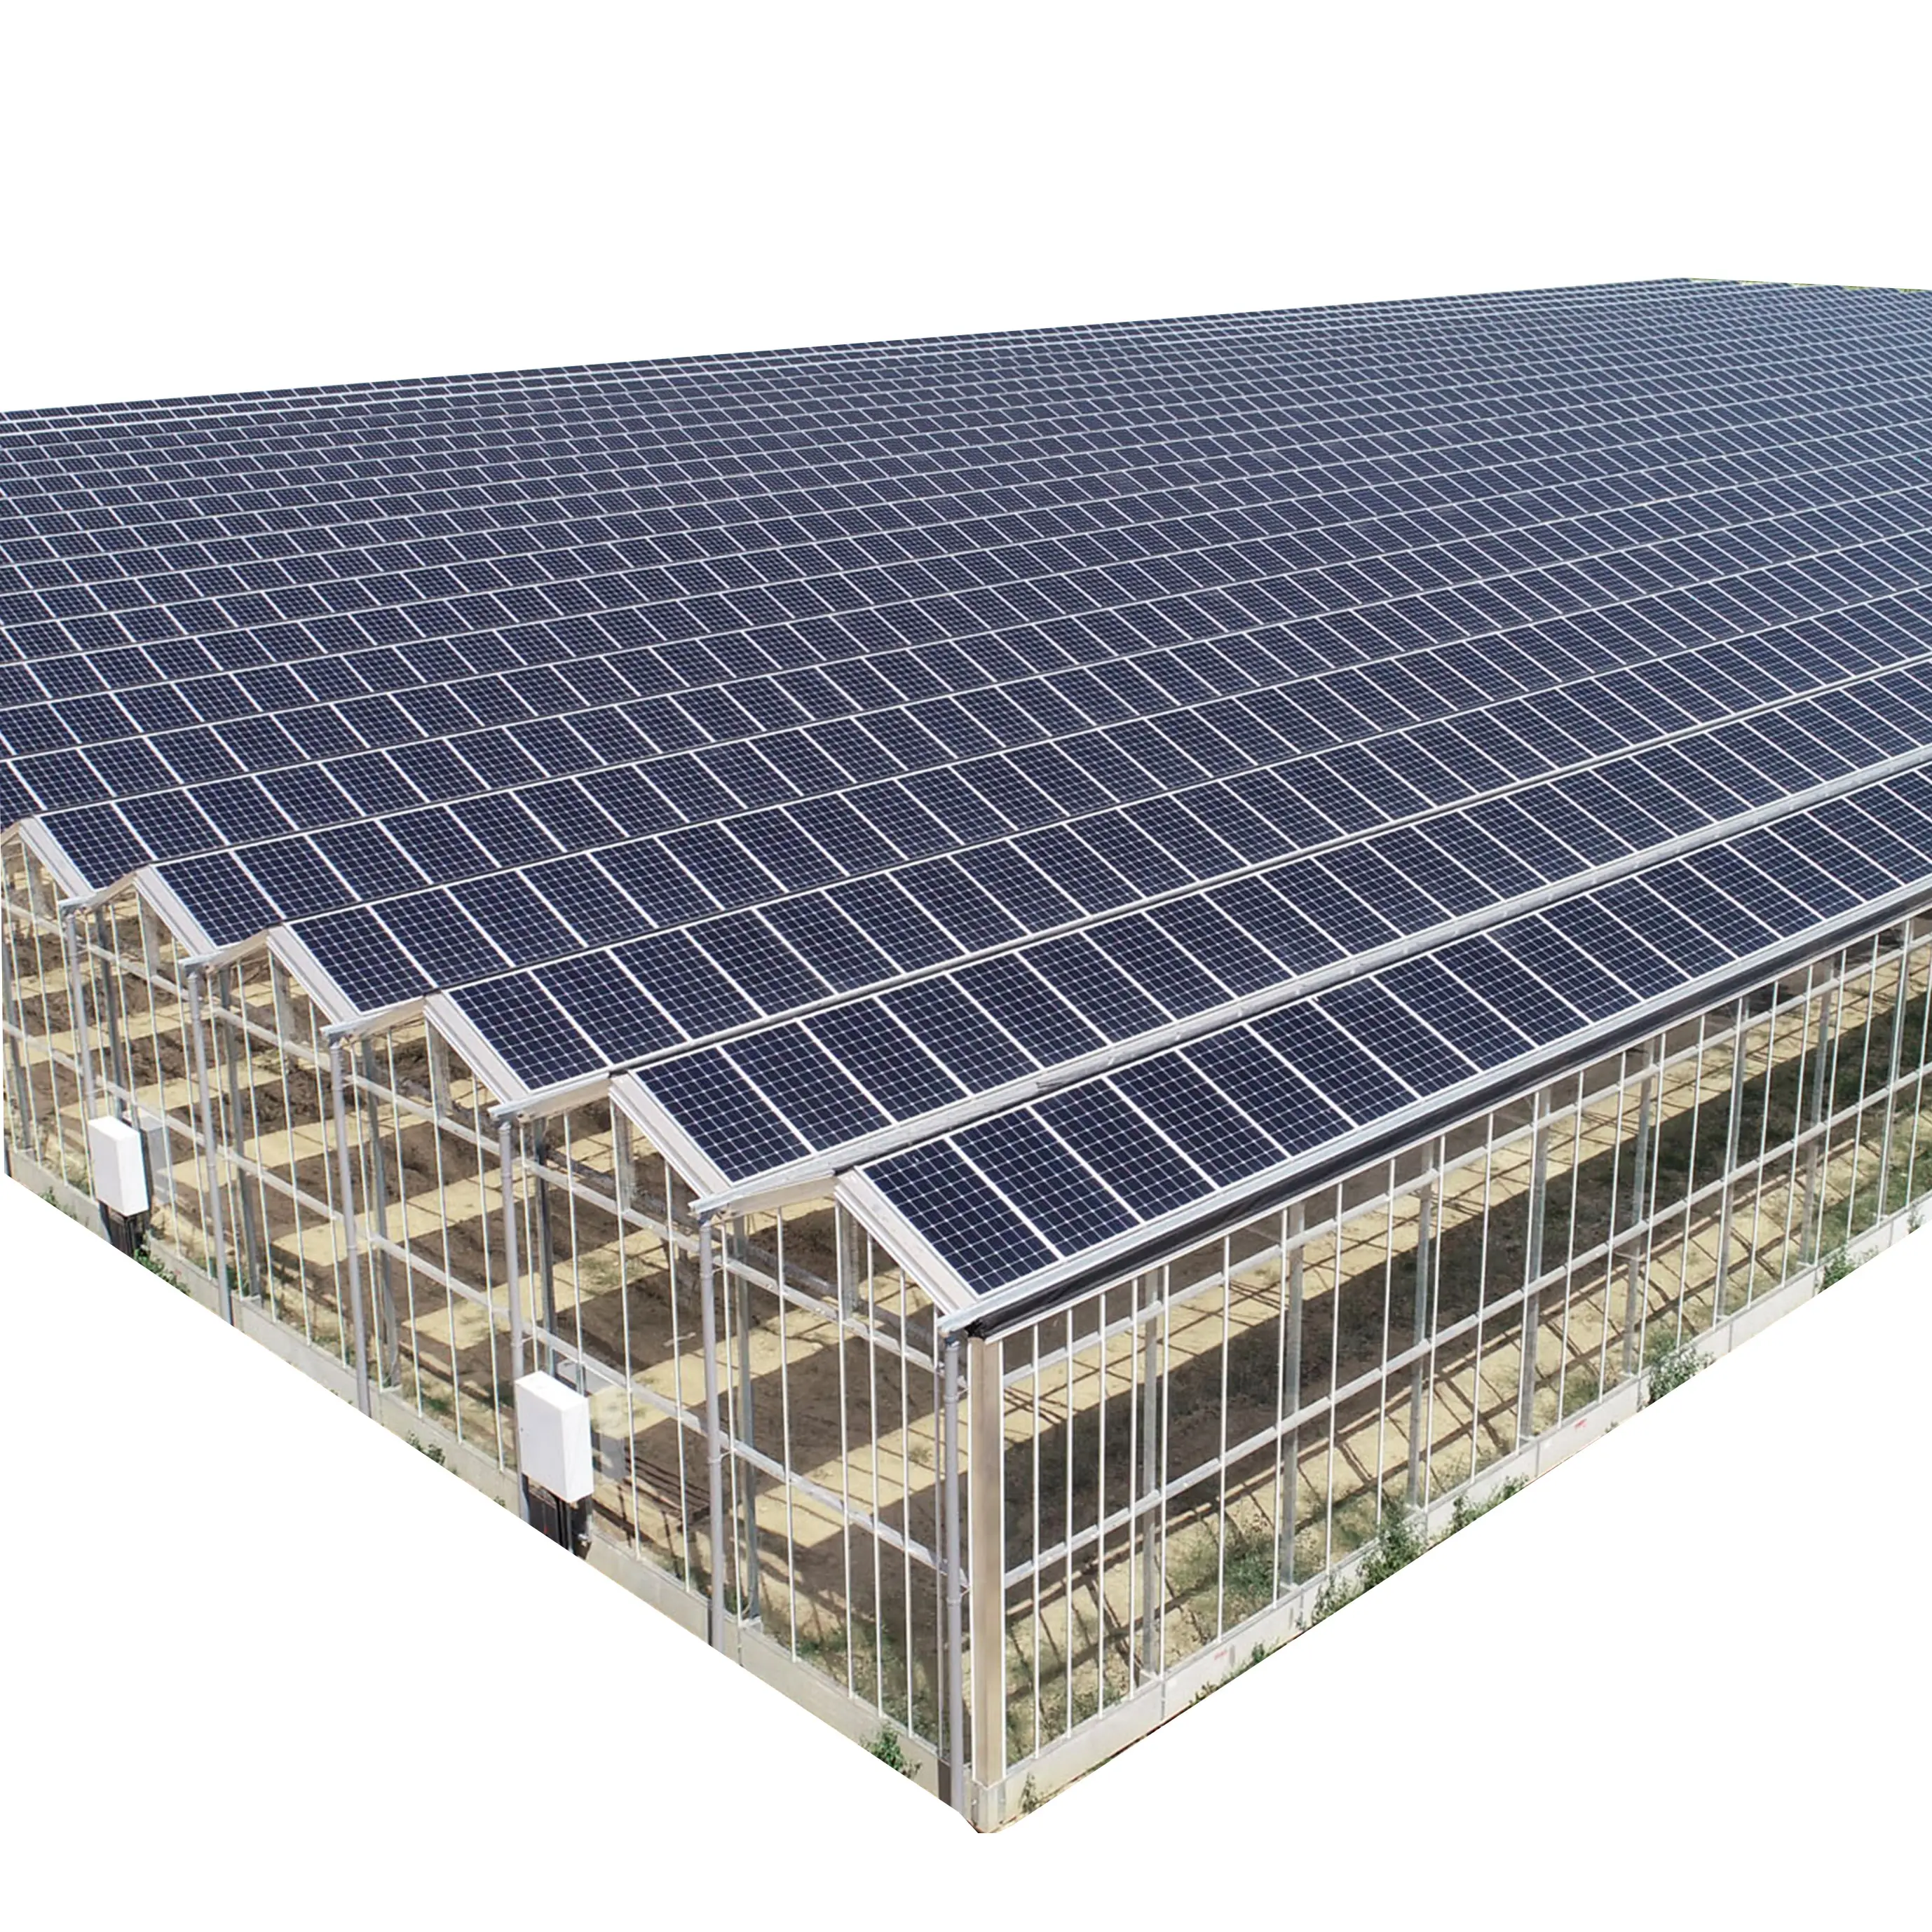 Serra kyard fotovoltaico solare serre in vetro giardino serra copertura per piante antipioggia all'aperto Bac